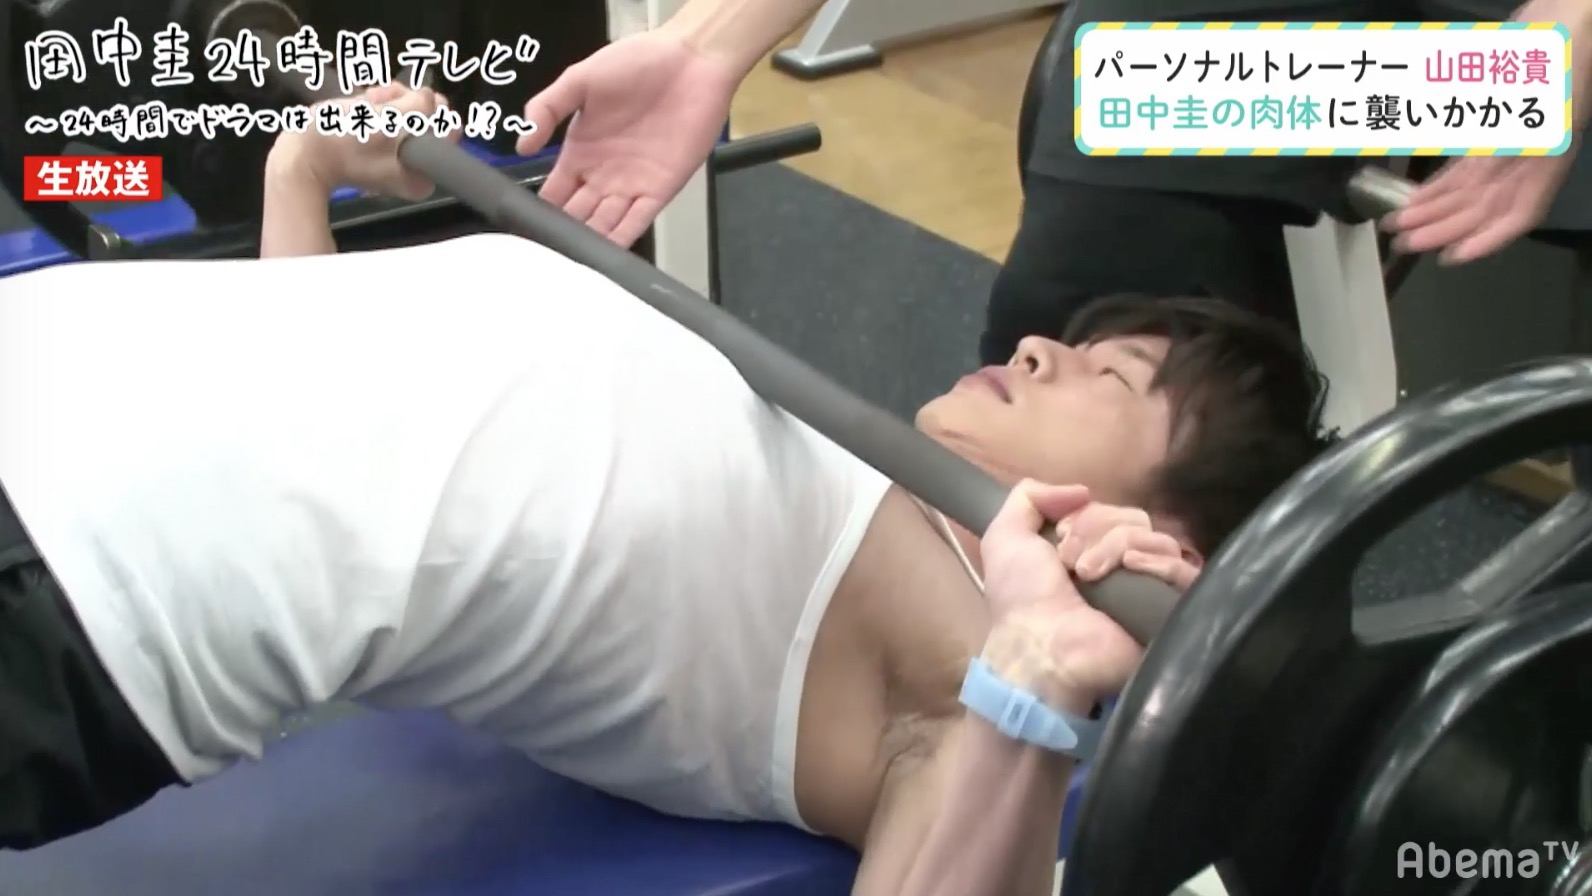 画像 田中圭の筋肉が綺麗 筋トレ法や鍛えるきっかけとは